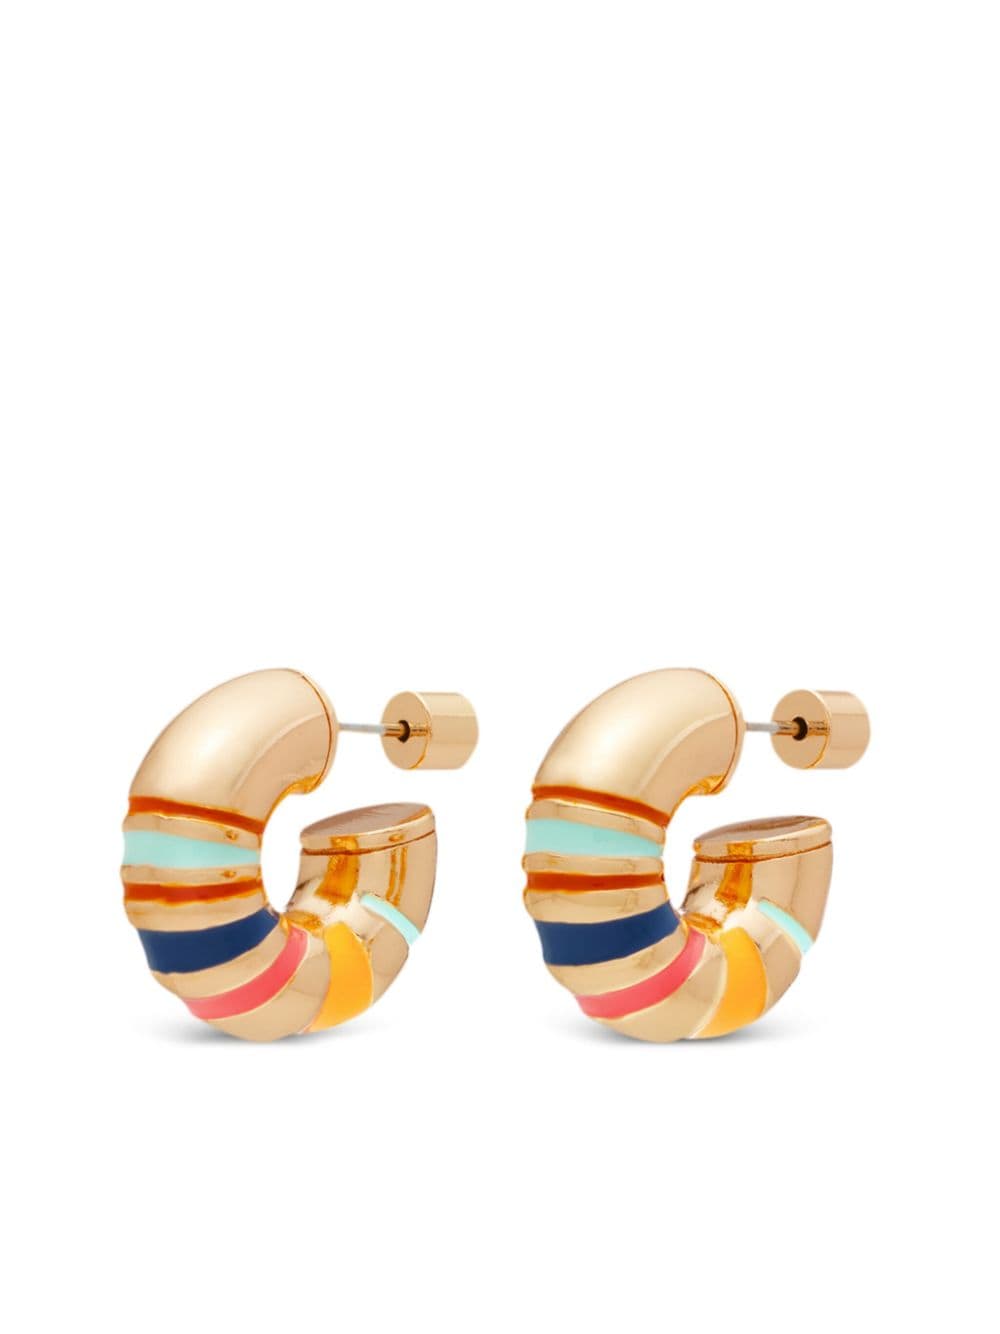 The Campania hoop earrings